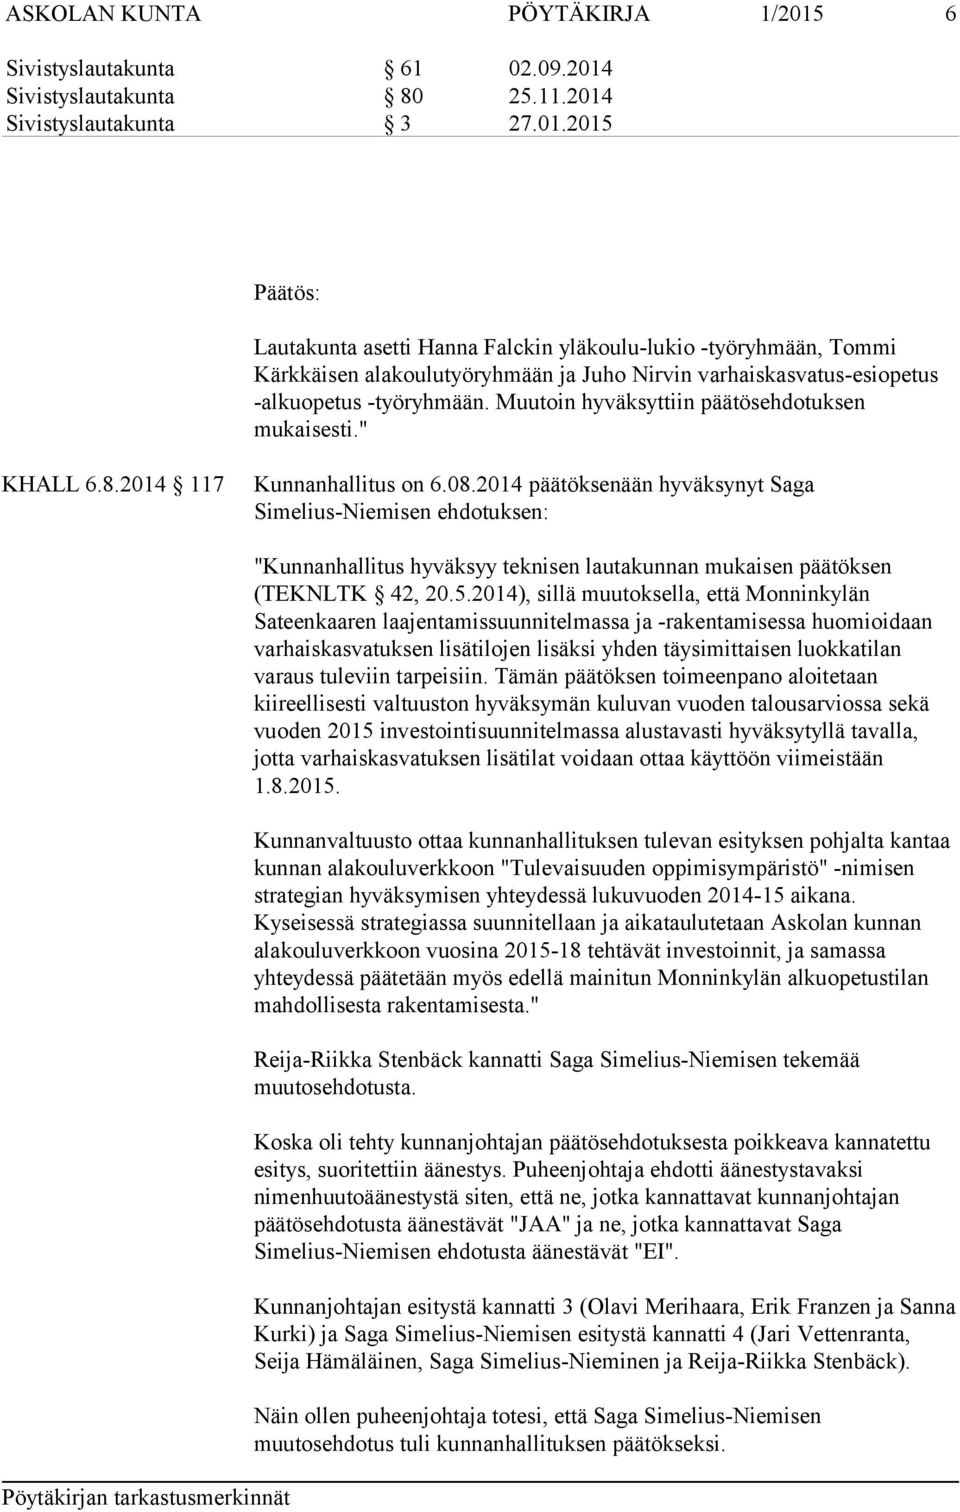 2014 päätöksenään hyväksynyt Saga Simelius-Niemisen ehdotuksen: "Kunnanhallitus hyväksyy teknisen lautakunnan mukaisen päätöksen (TEKNLTK 42, 20.5.